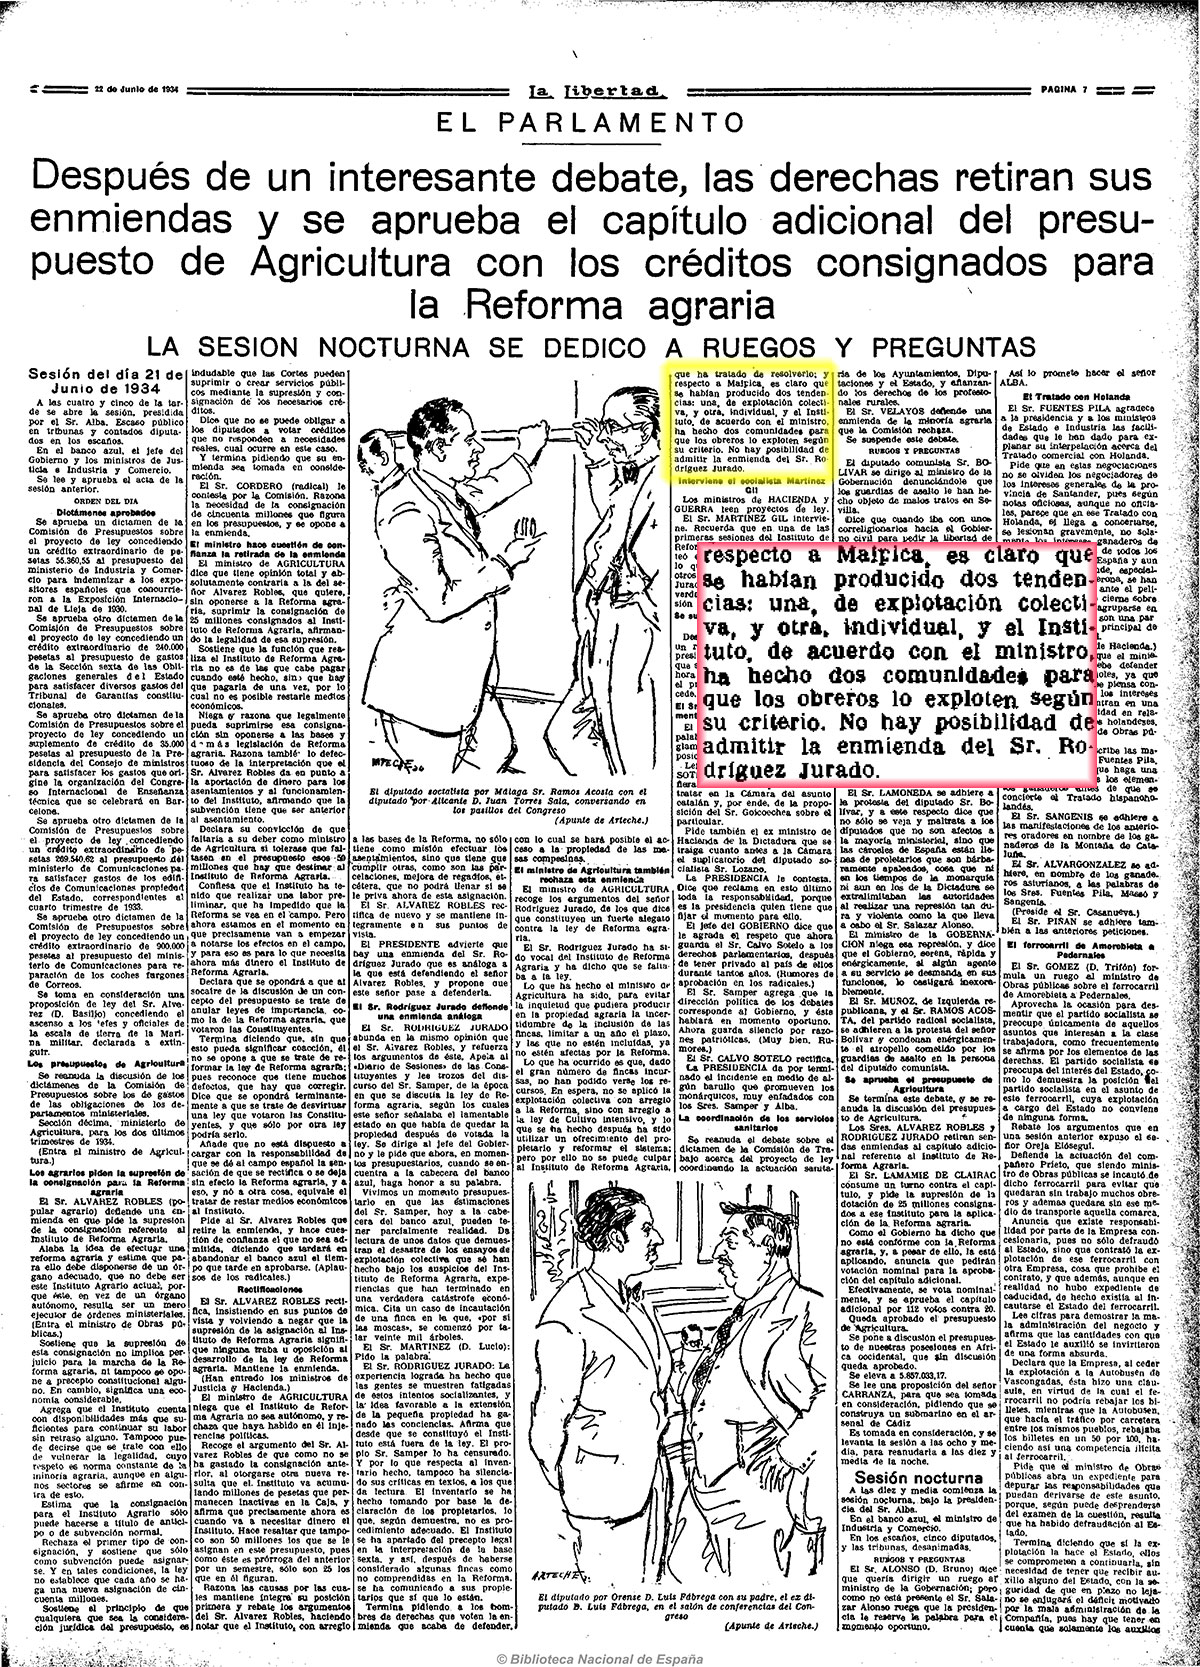 La reforma agraria, se aprueba la división de la Comunidad de Campesinos en dos, una explotada colectivamente y otraindividualmente. La libertad 22-6-1934